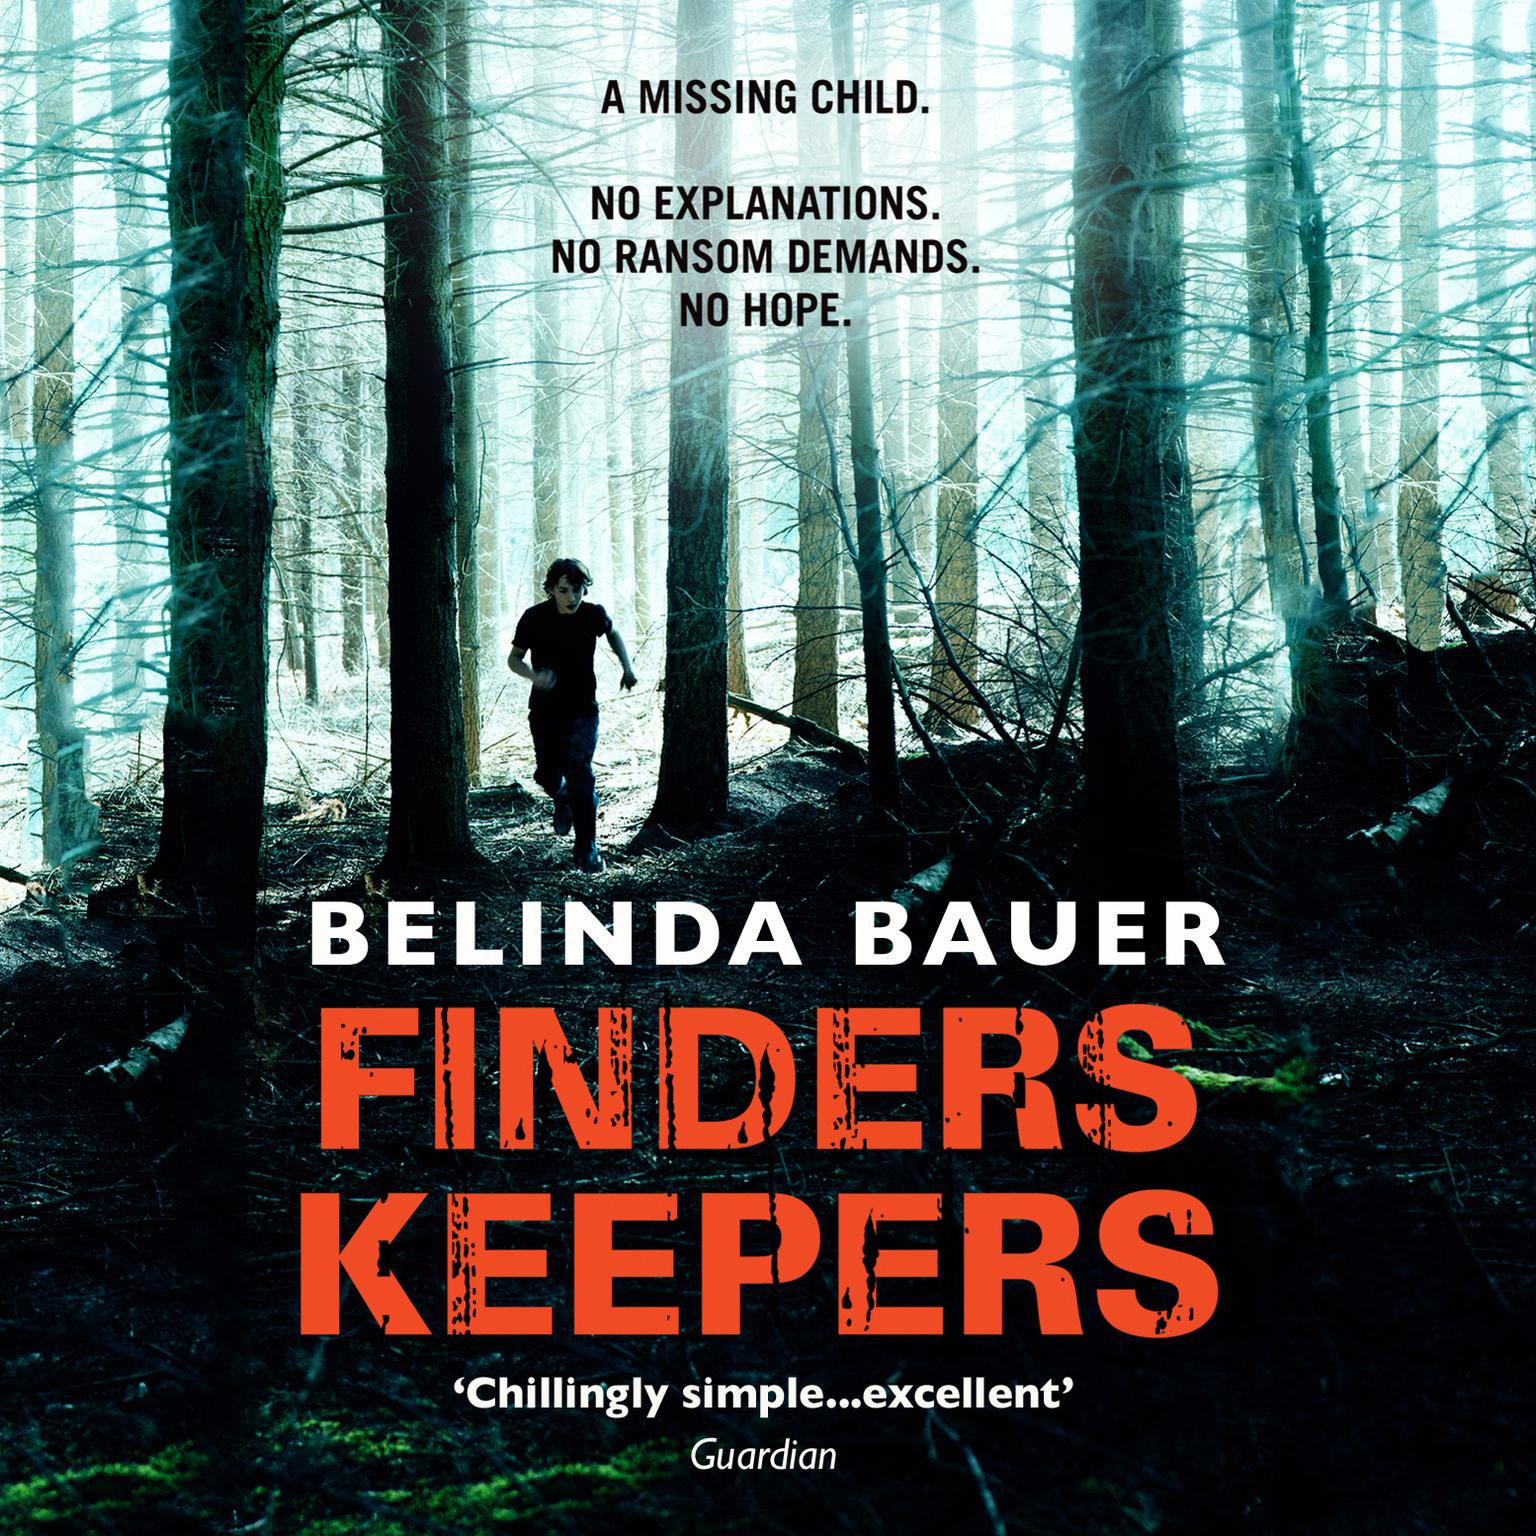 Finders Keepers Audiobook, by Belinda Bauer